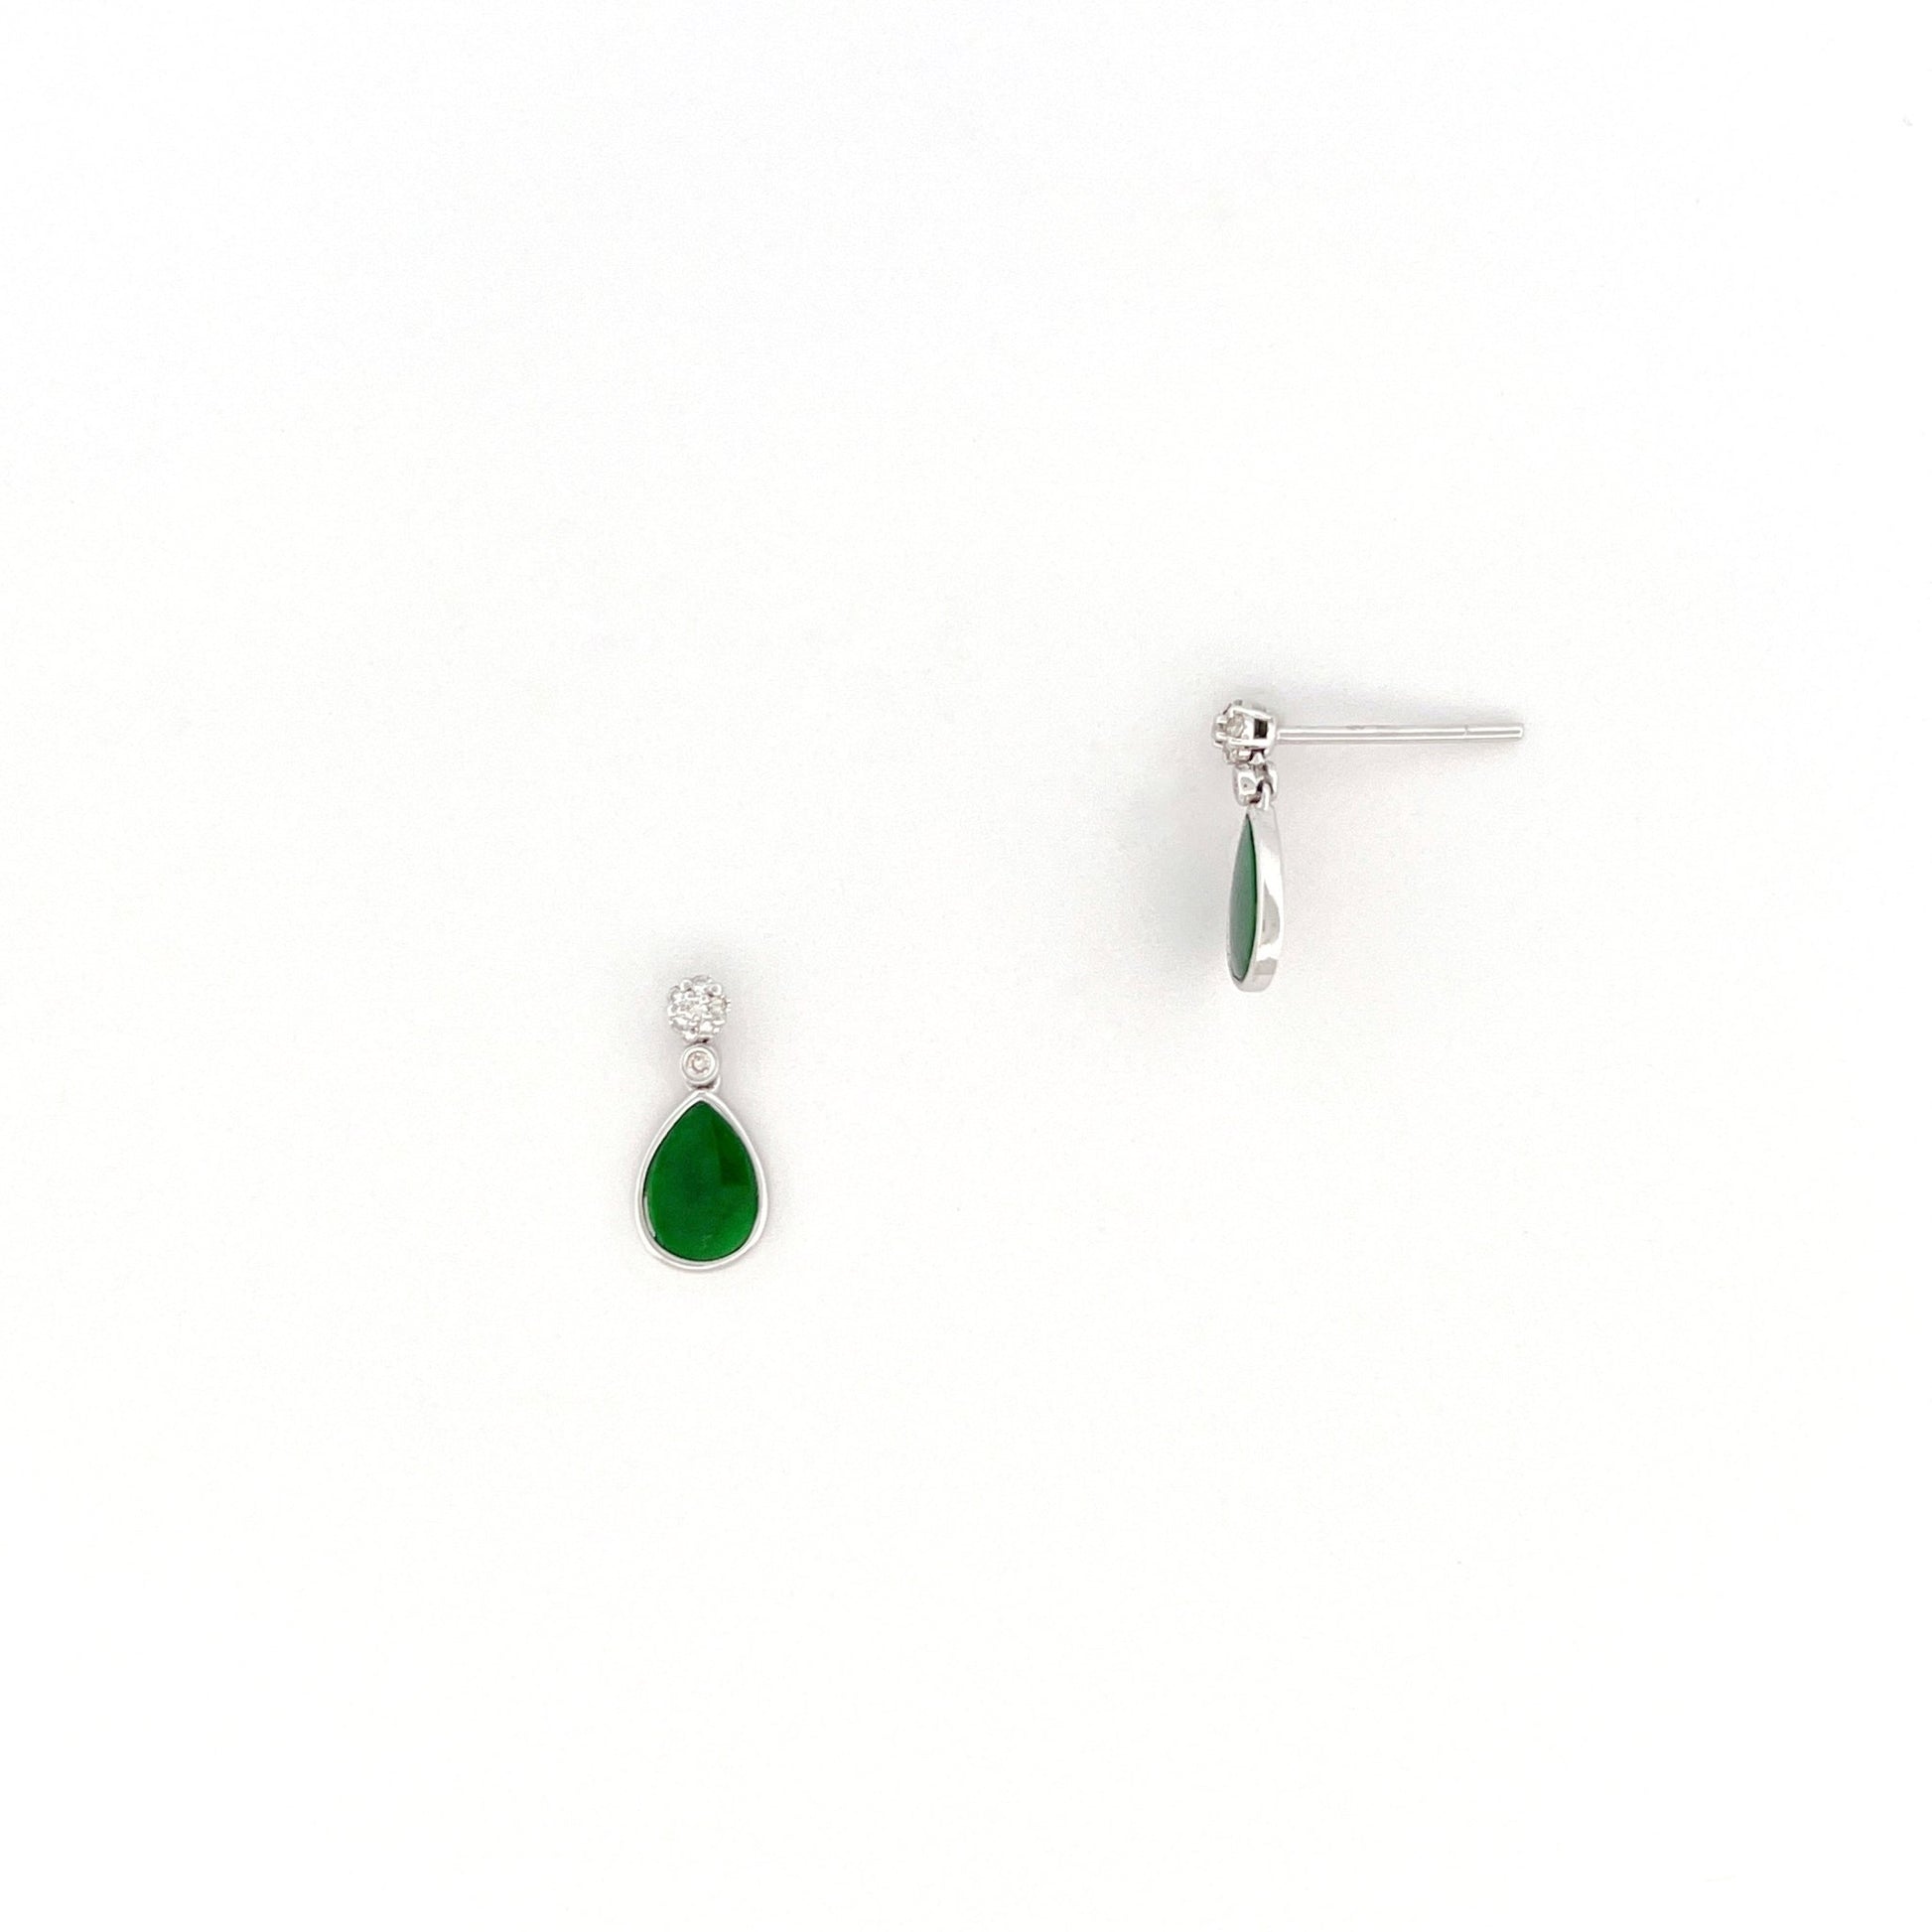 耳環 - 花青深綠色水滴形天然翡翠配鑽石拼花18K白色金耳環 - 雅玉珠寶